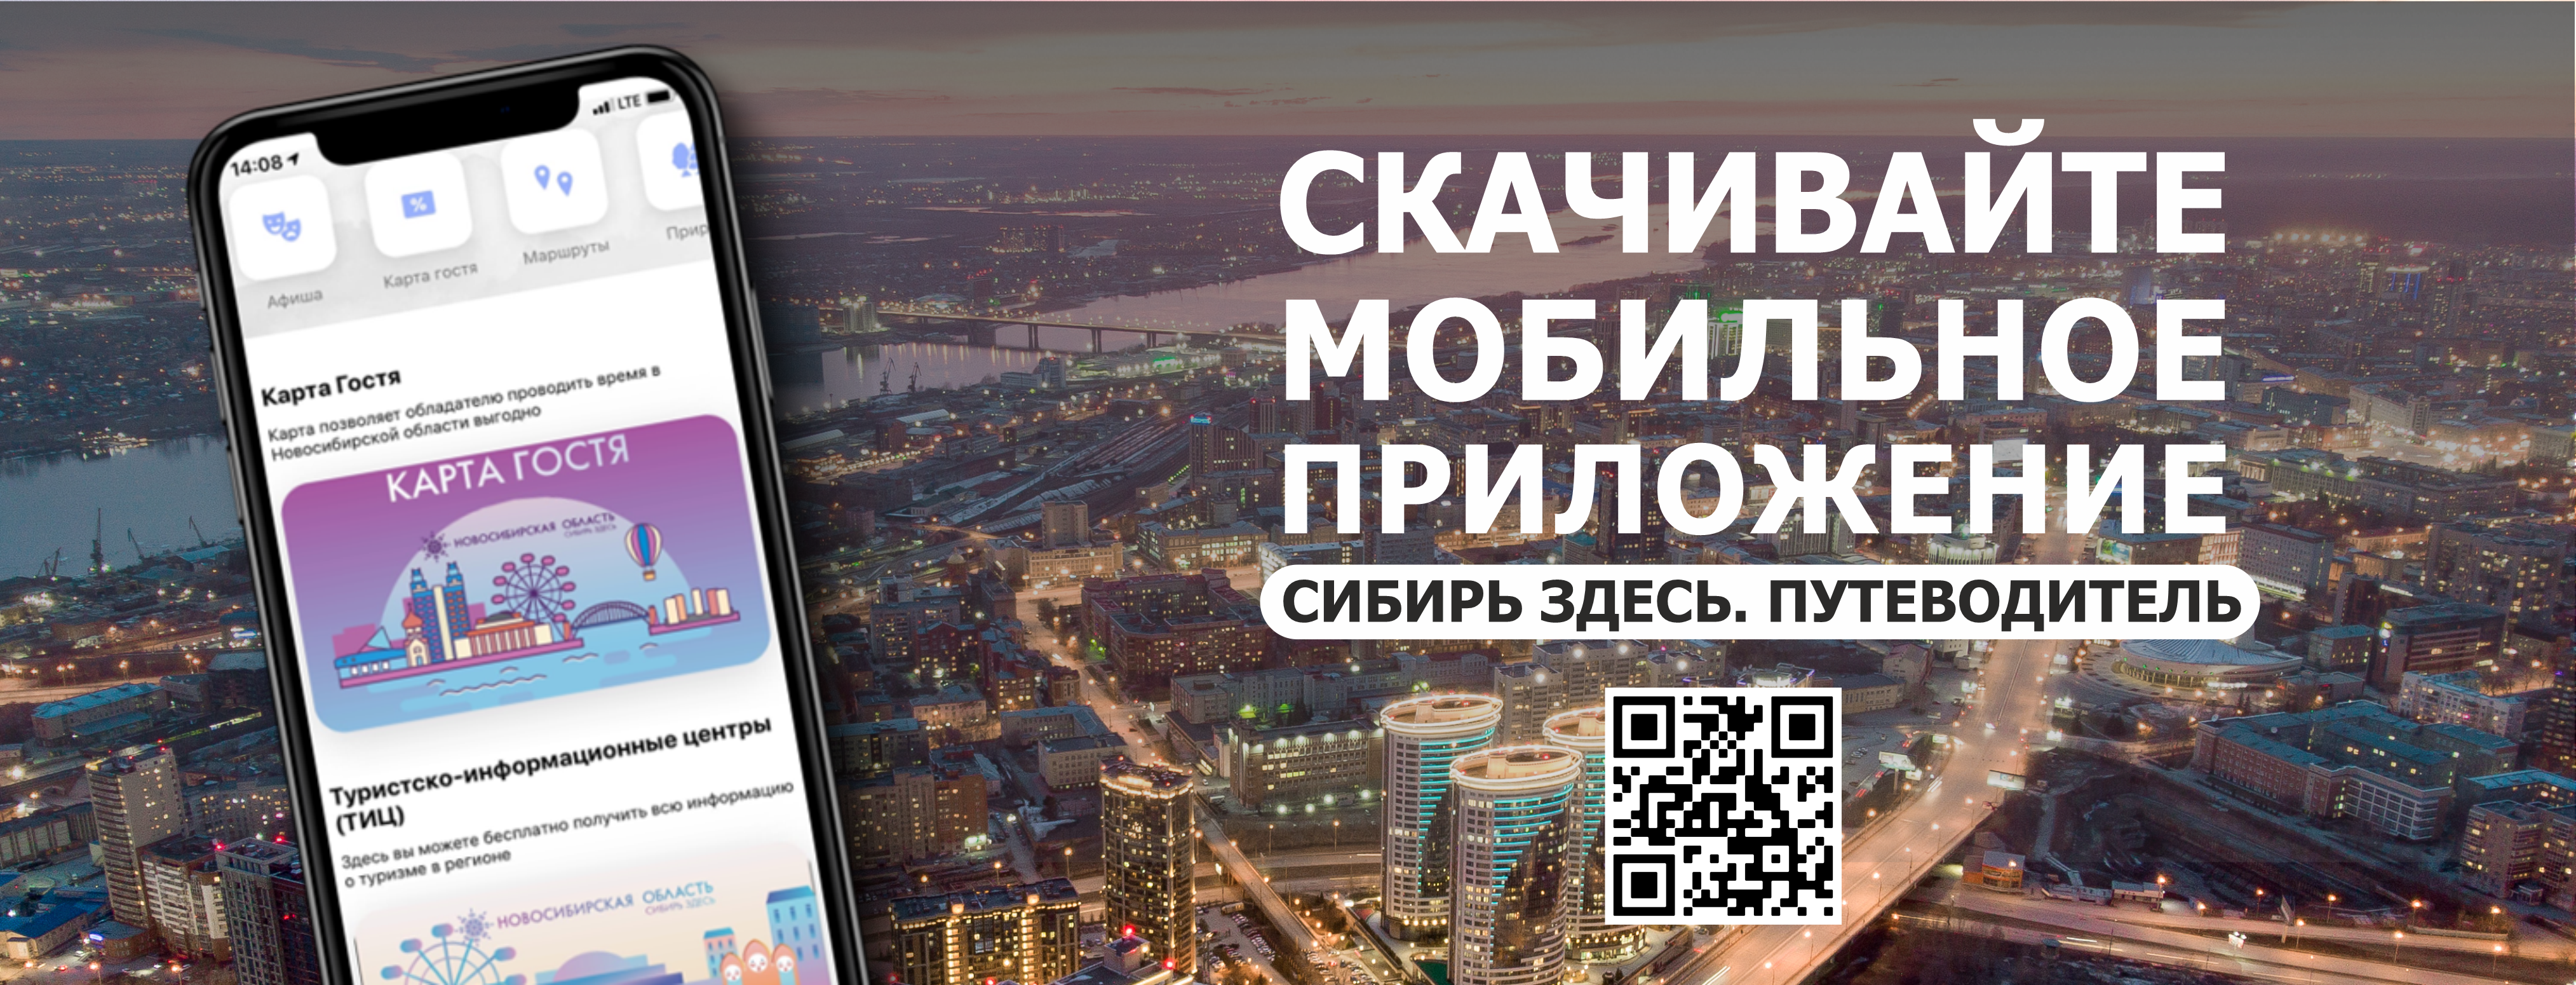 Гид сибири сайт. Приложение Сибирь здесь. Мобильное приложение Сибирское. Тур Новосибирск. Интересные места Новосибирска для туристов.